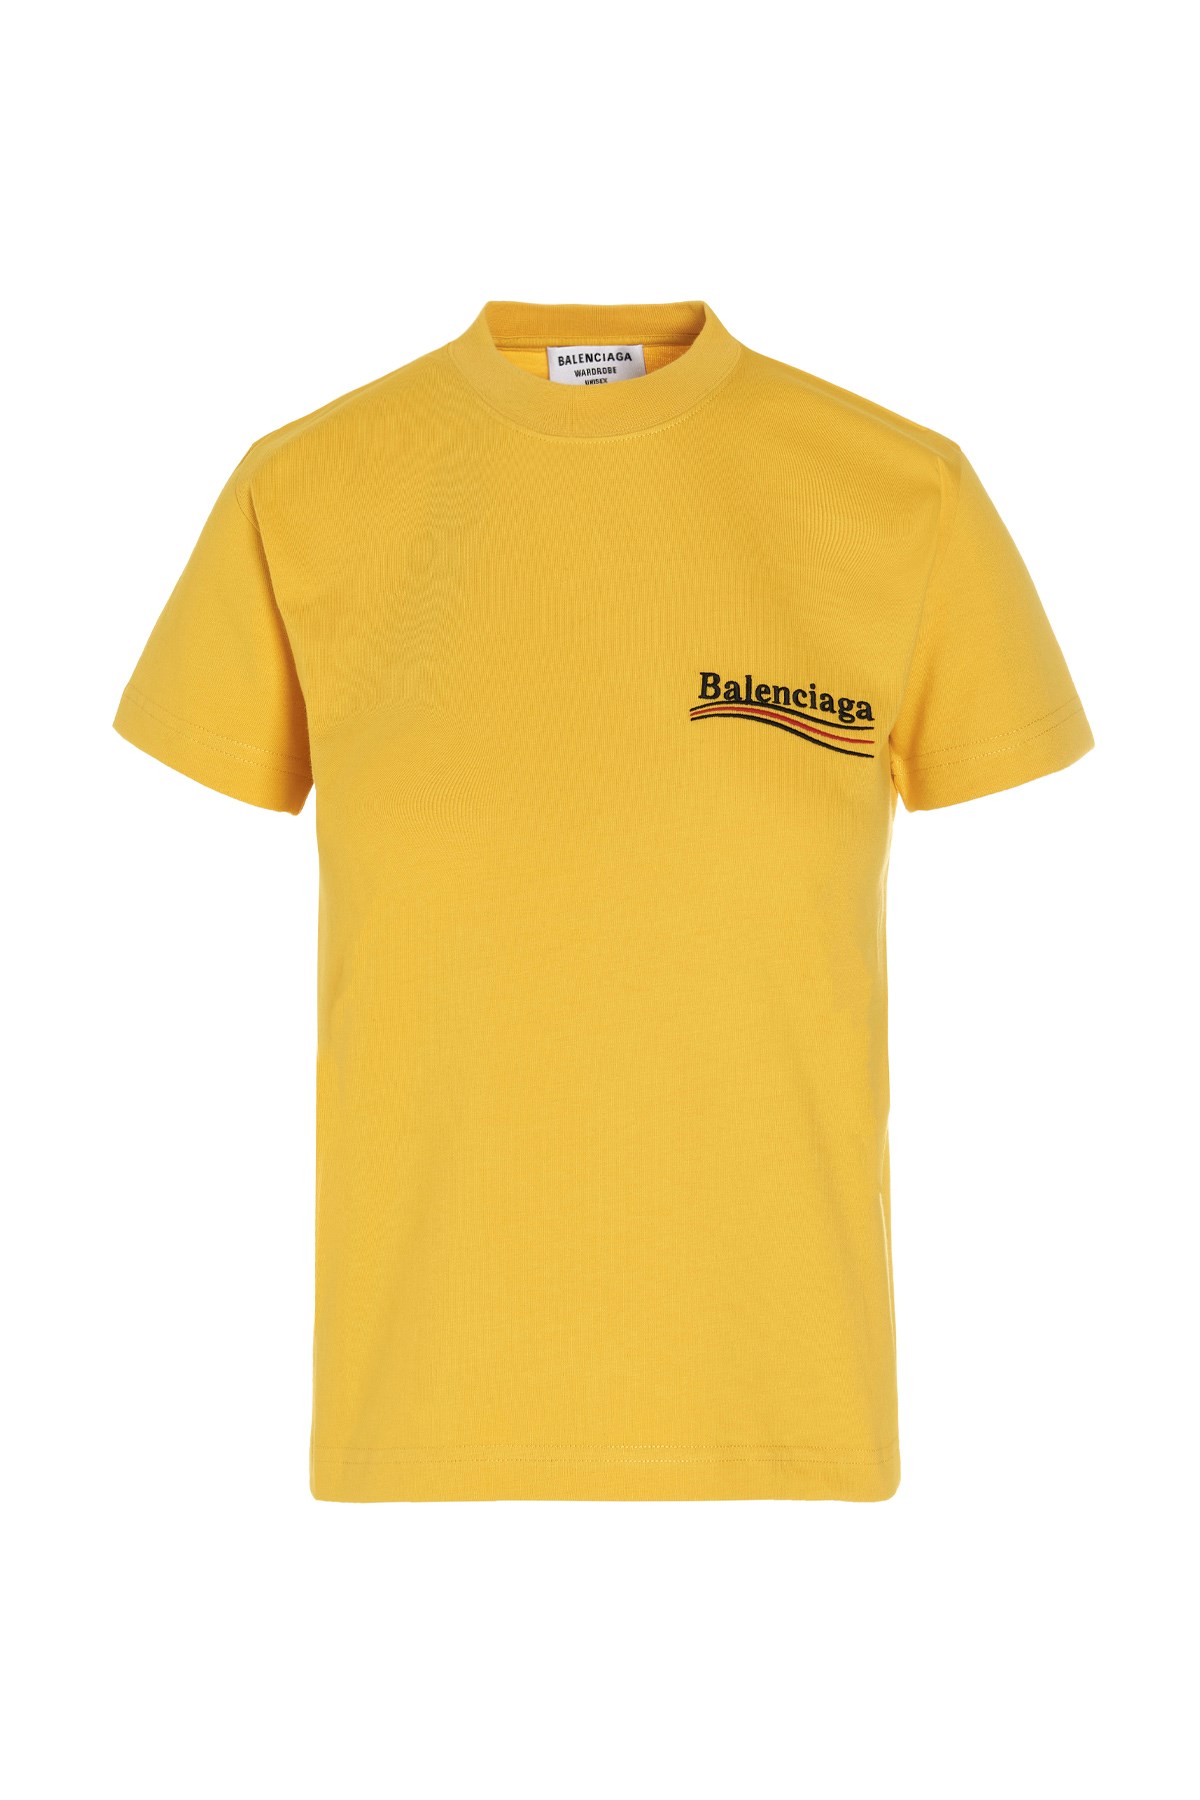 BALENCIAGA 'Political Campaign’ Logo T-Shirt'